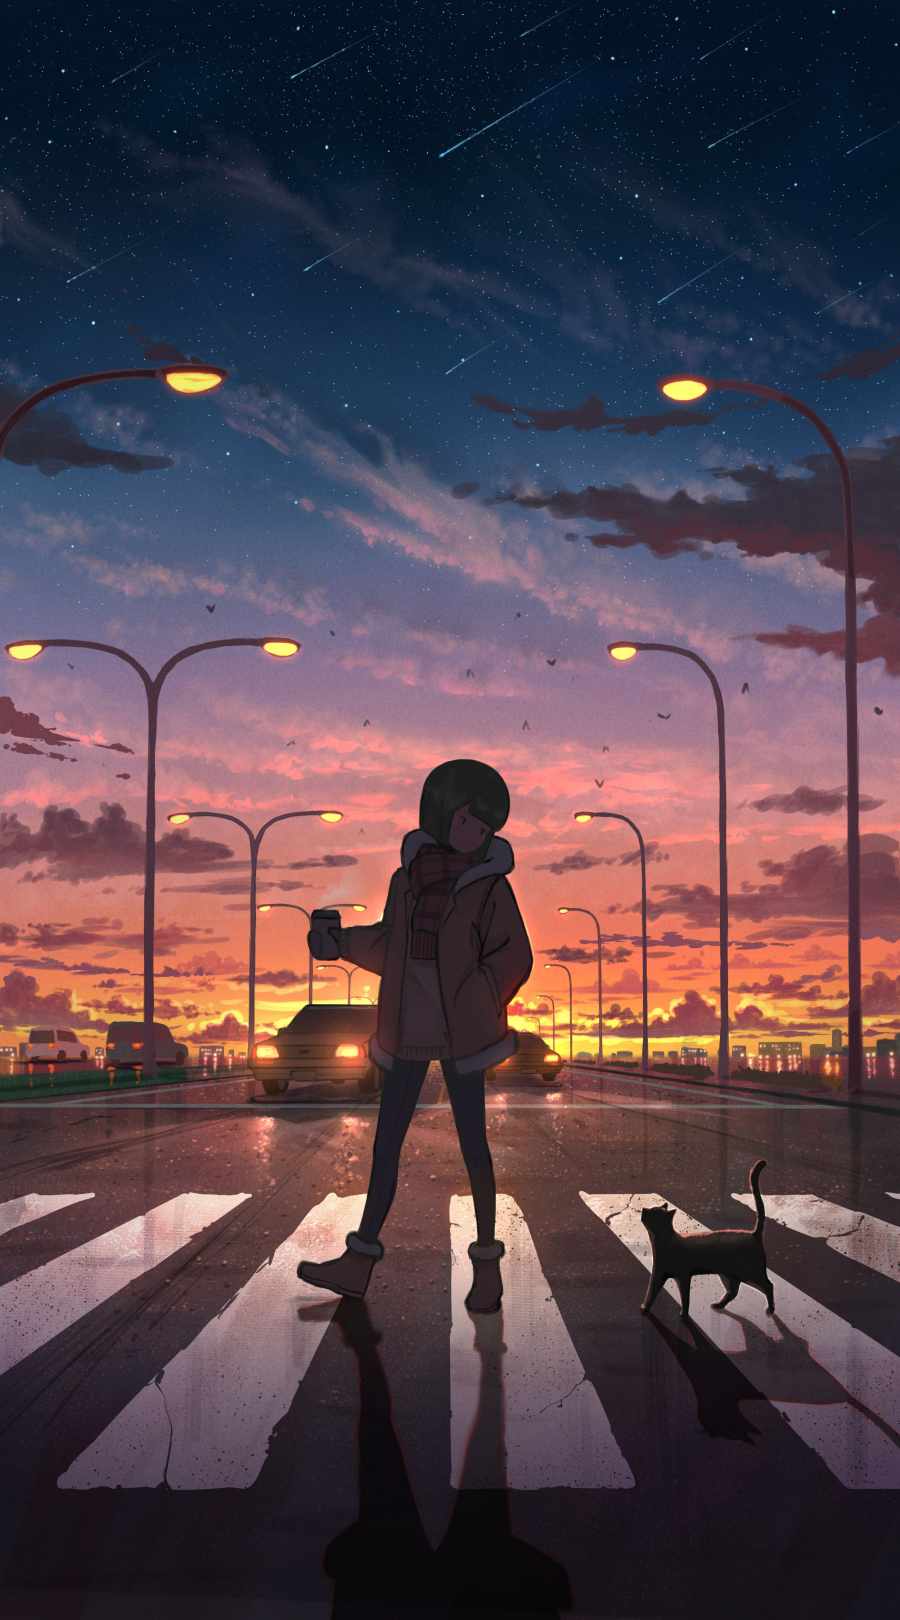 Anime iPhone Wallpapers: Đừng bỏ lỡ những hình nền Anime cực chất cho iPhone! Với những hình ảnh độc đáo và sắc nét, bạn sẽ cảm thấy thích thú và hài lòng khi sử dụng điện thoại của mình.